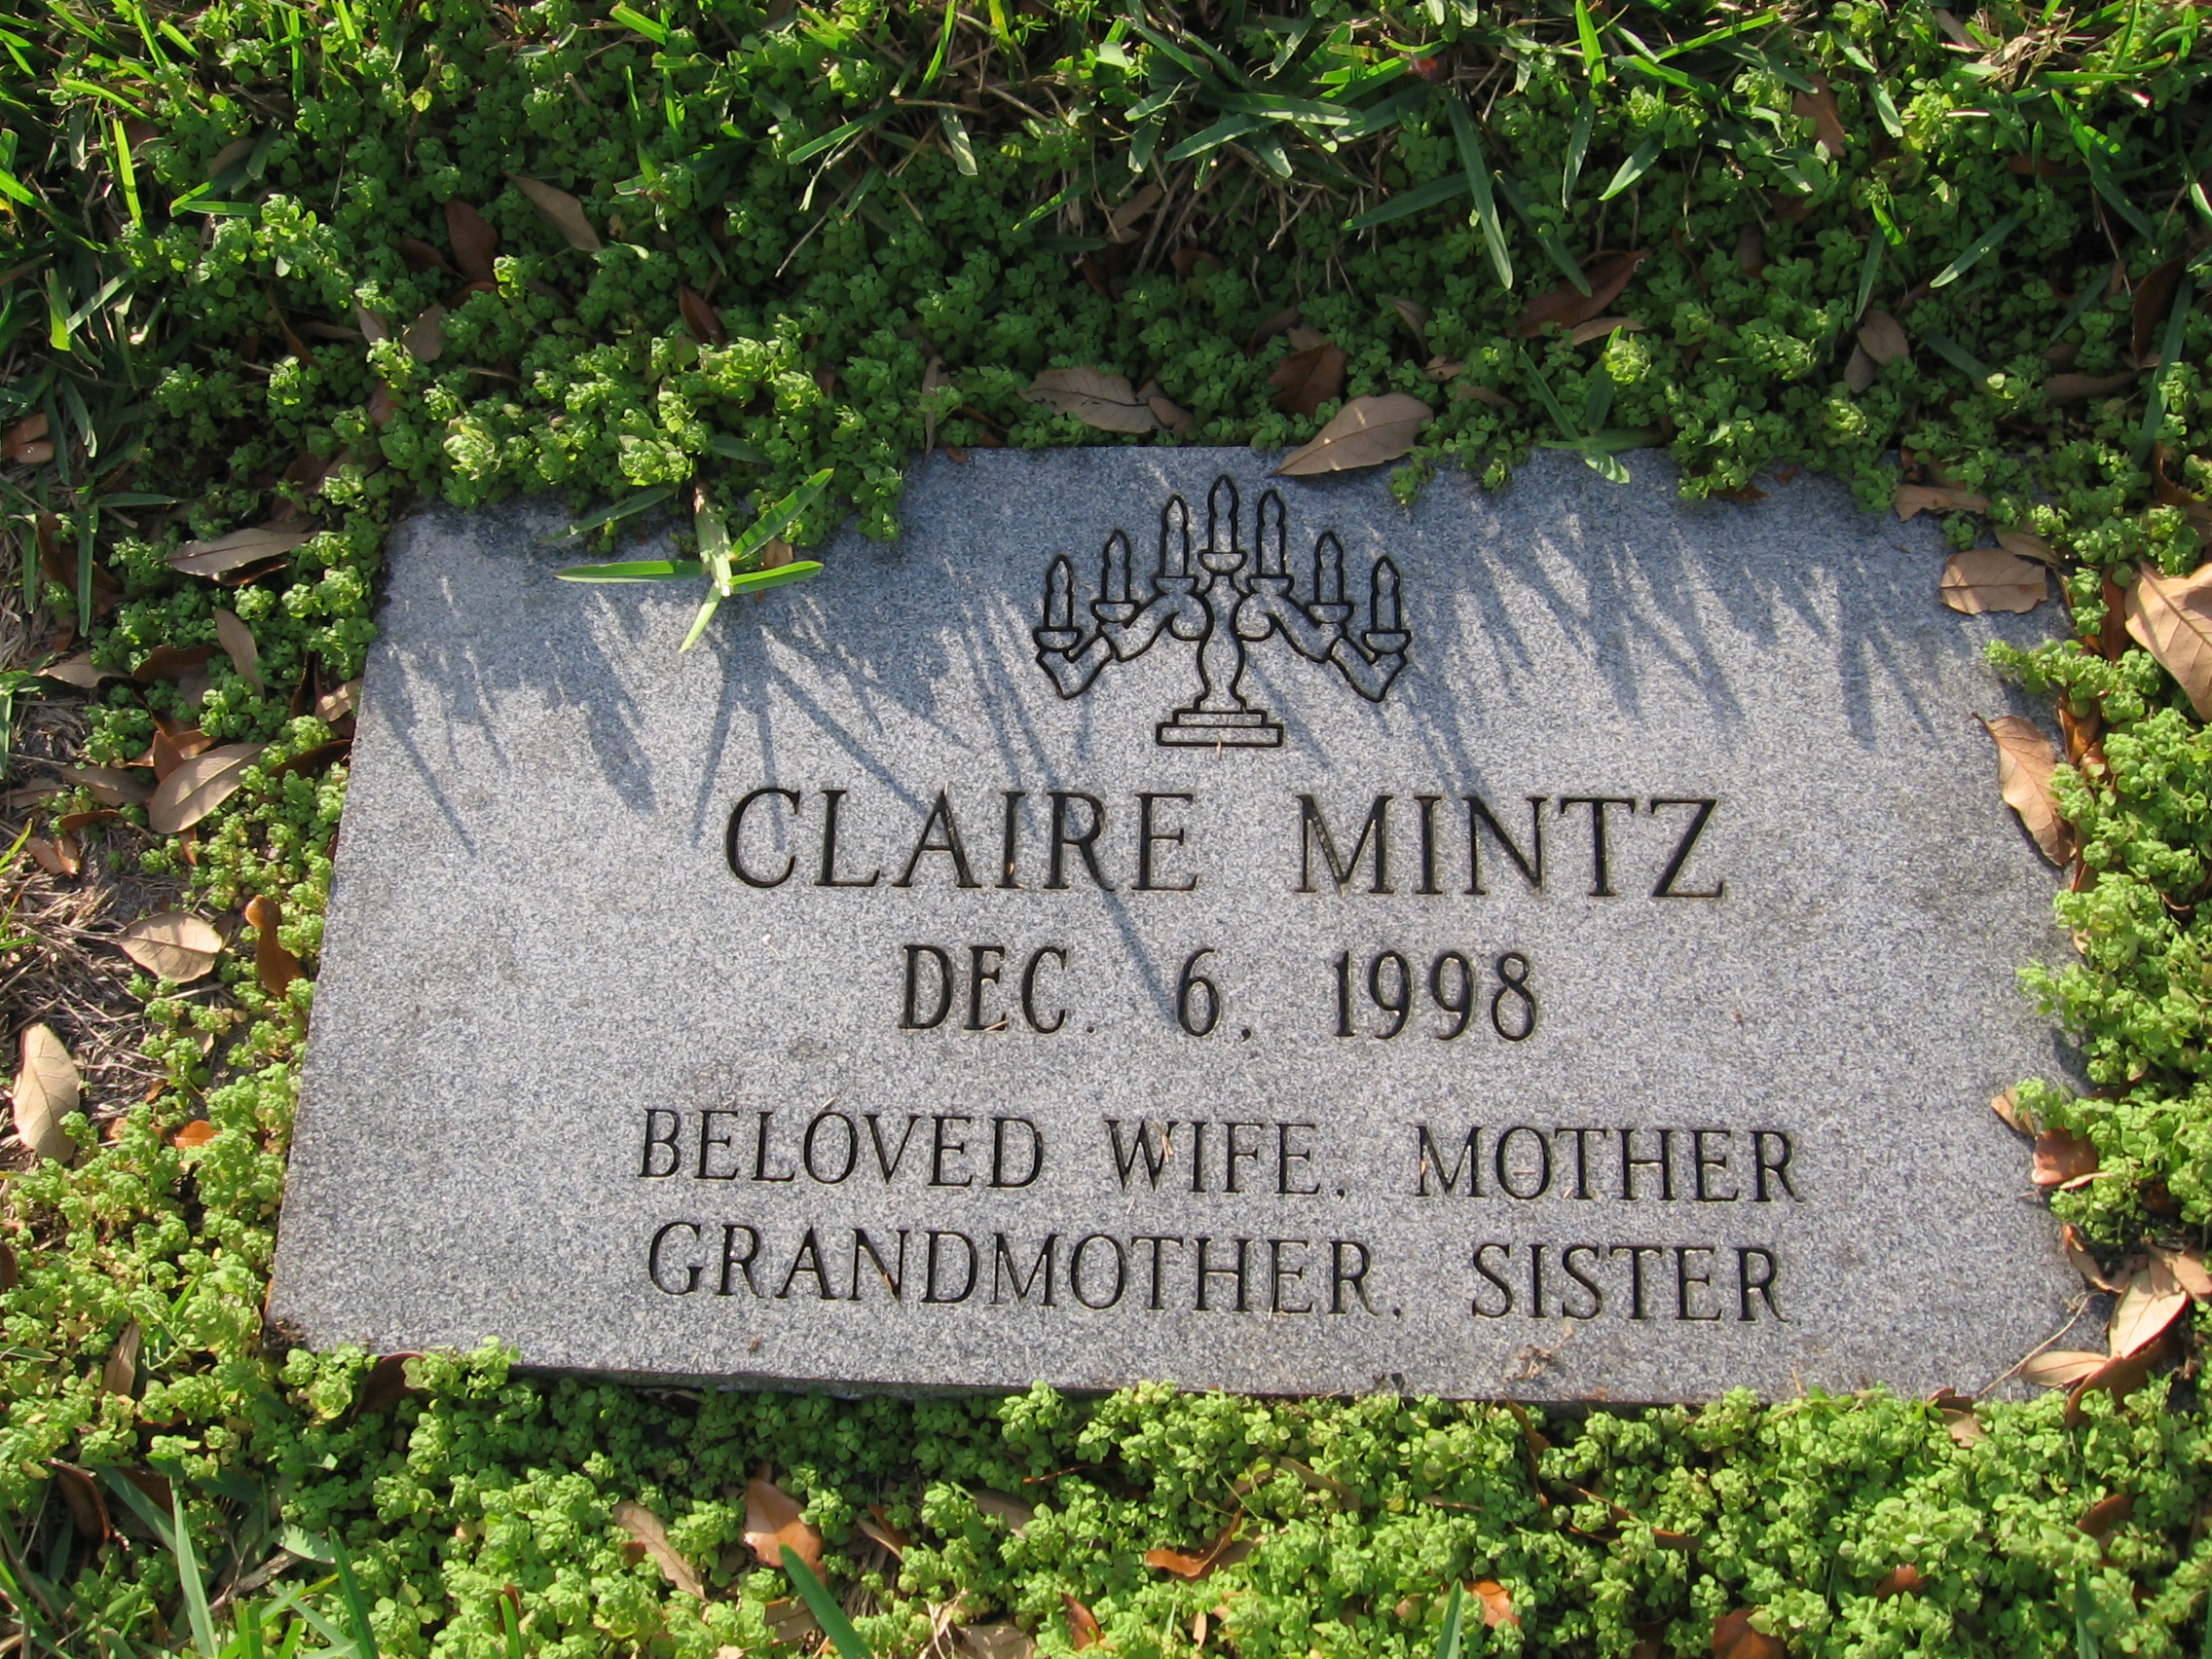 Claire Mintz